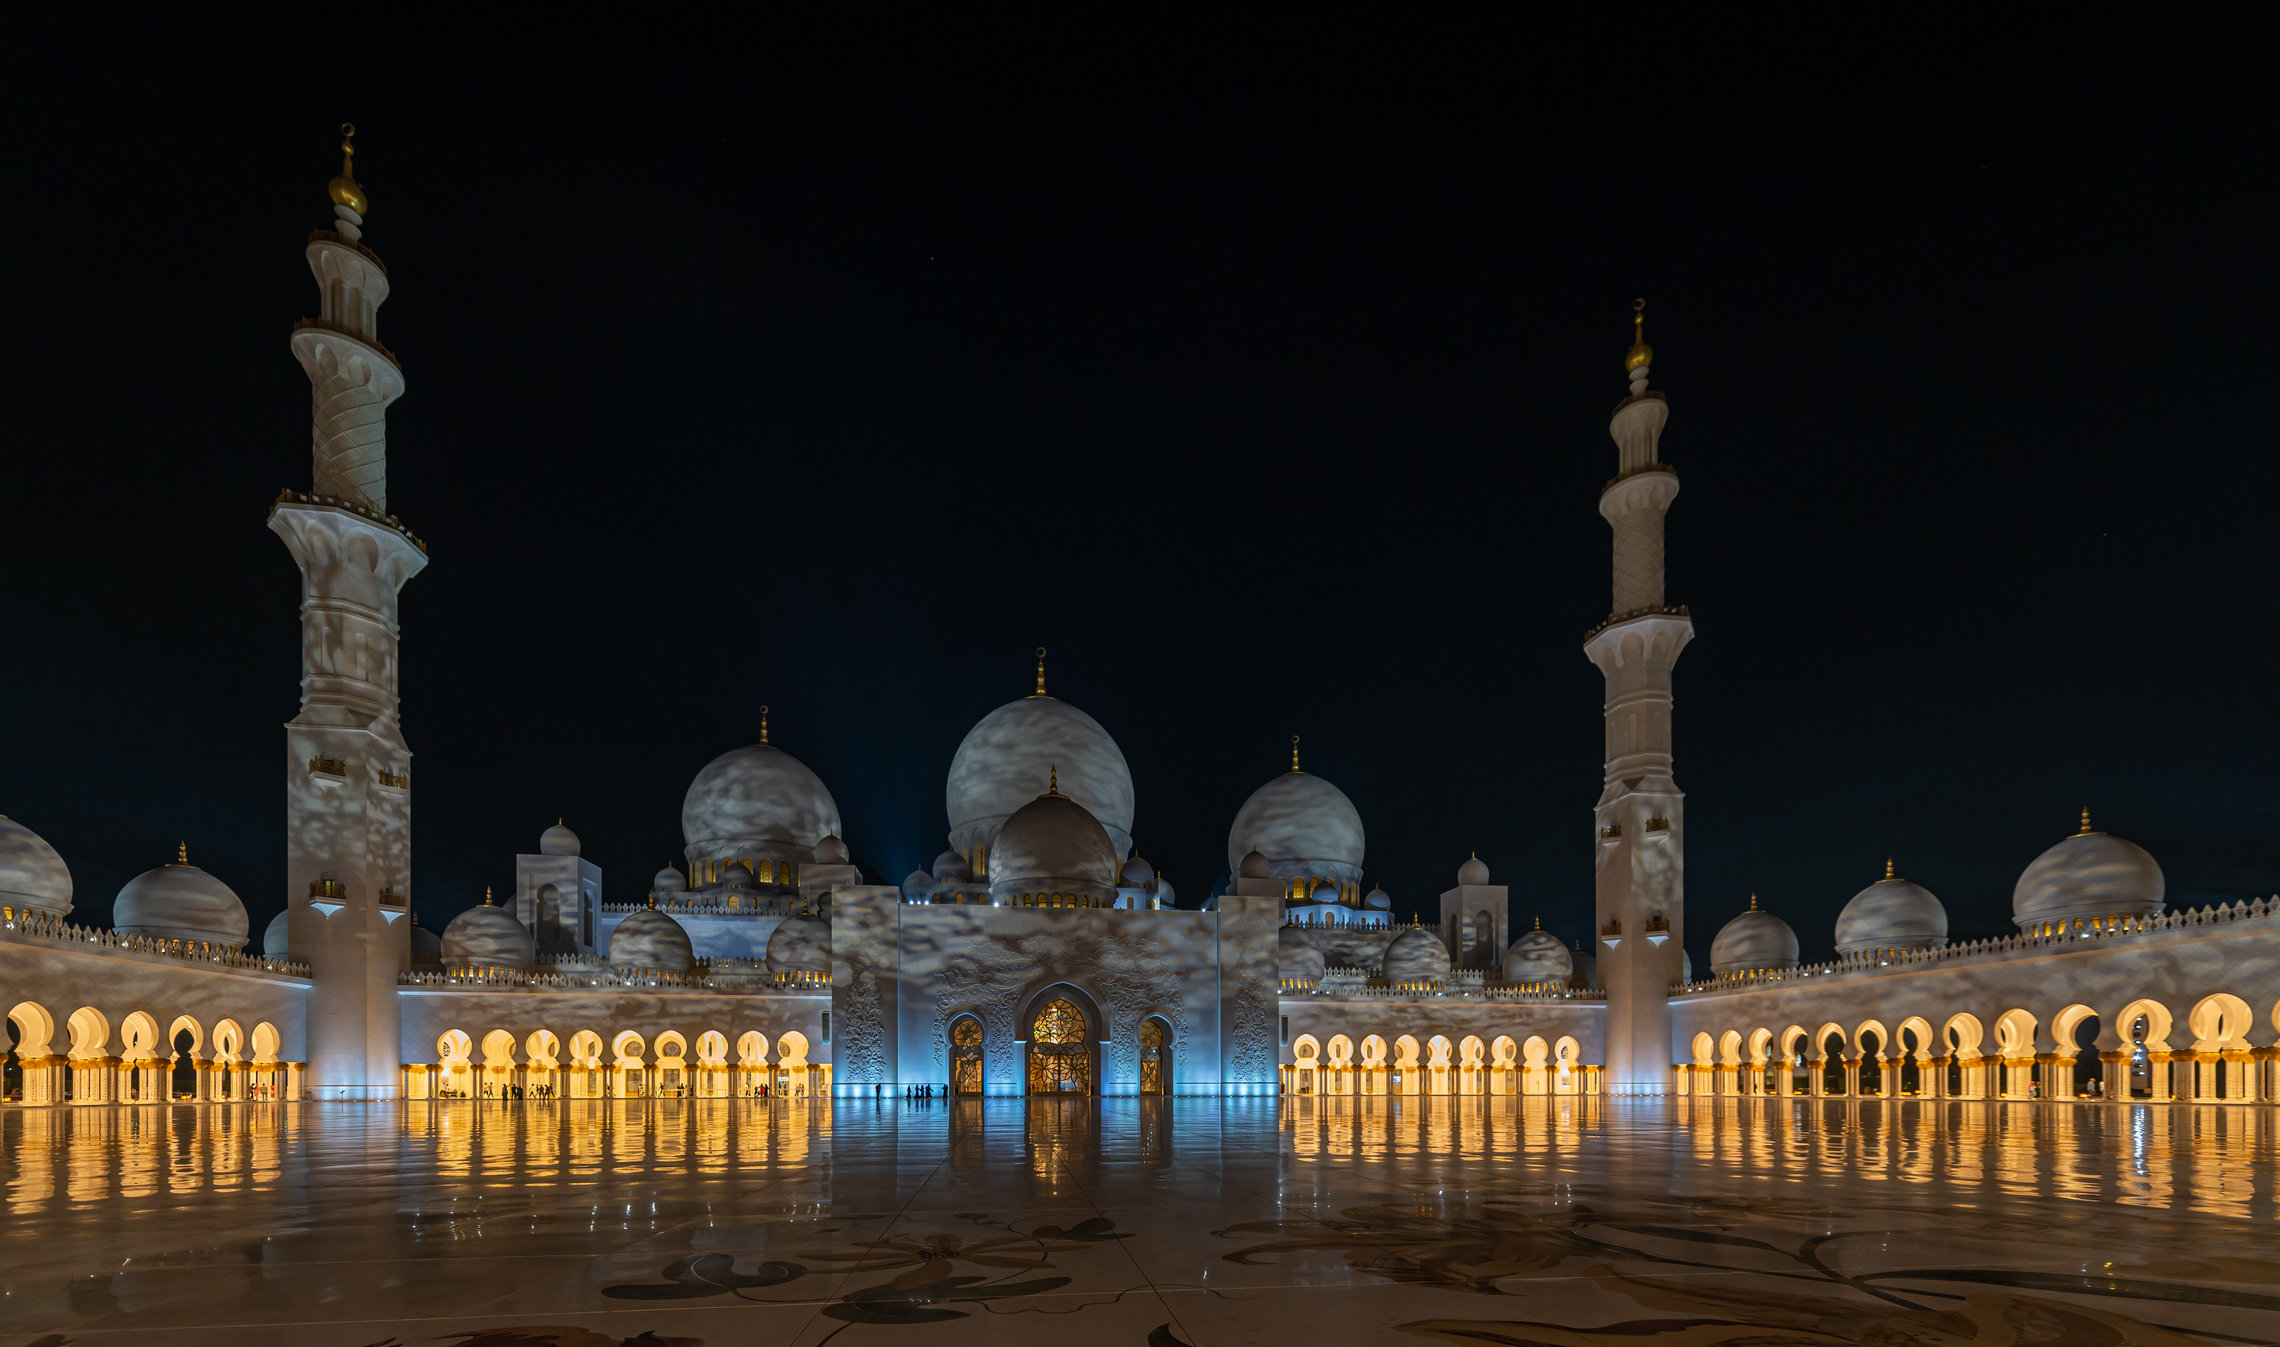  "Мечеть шейха Зайда"